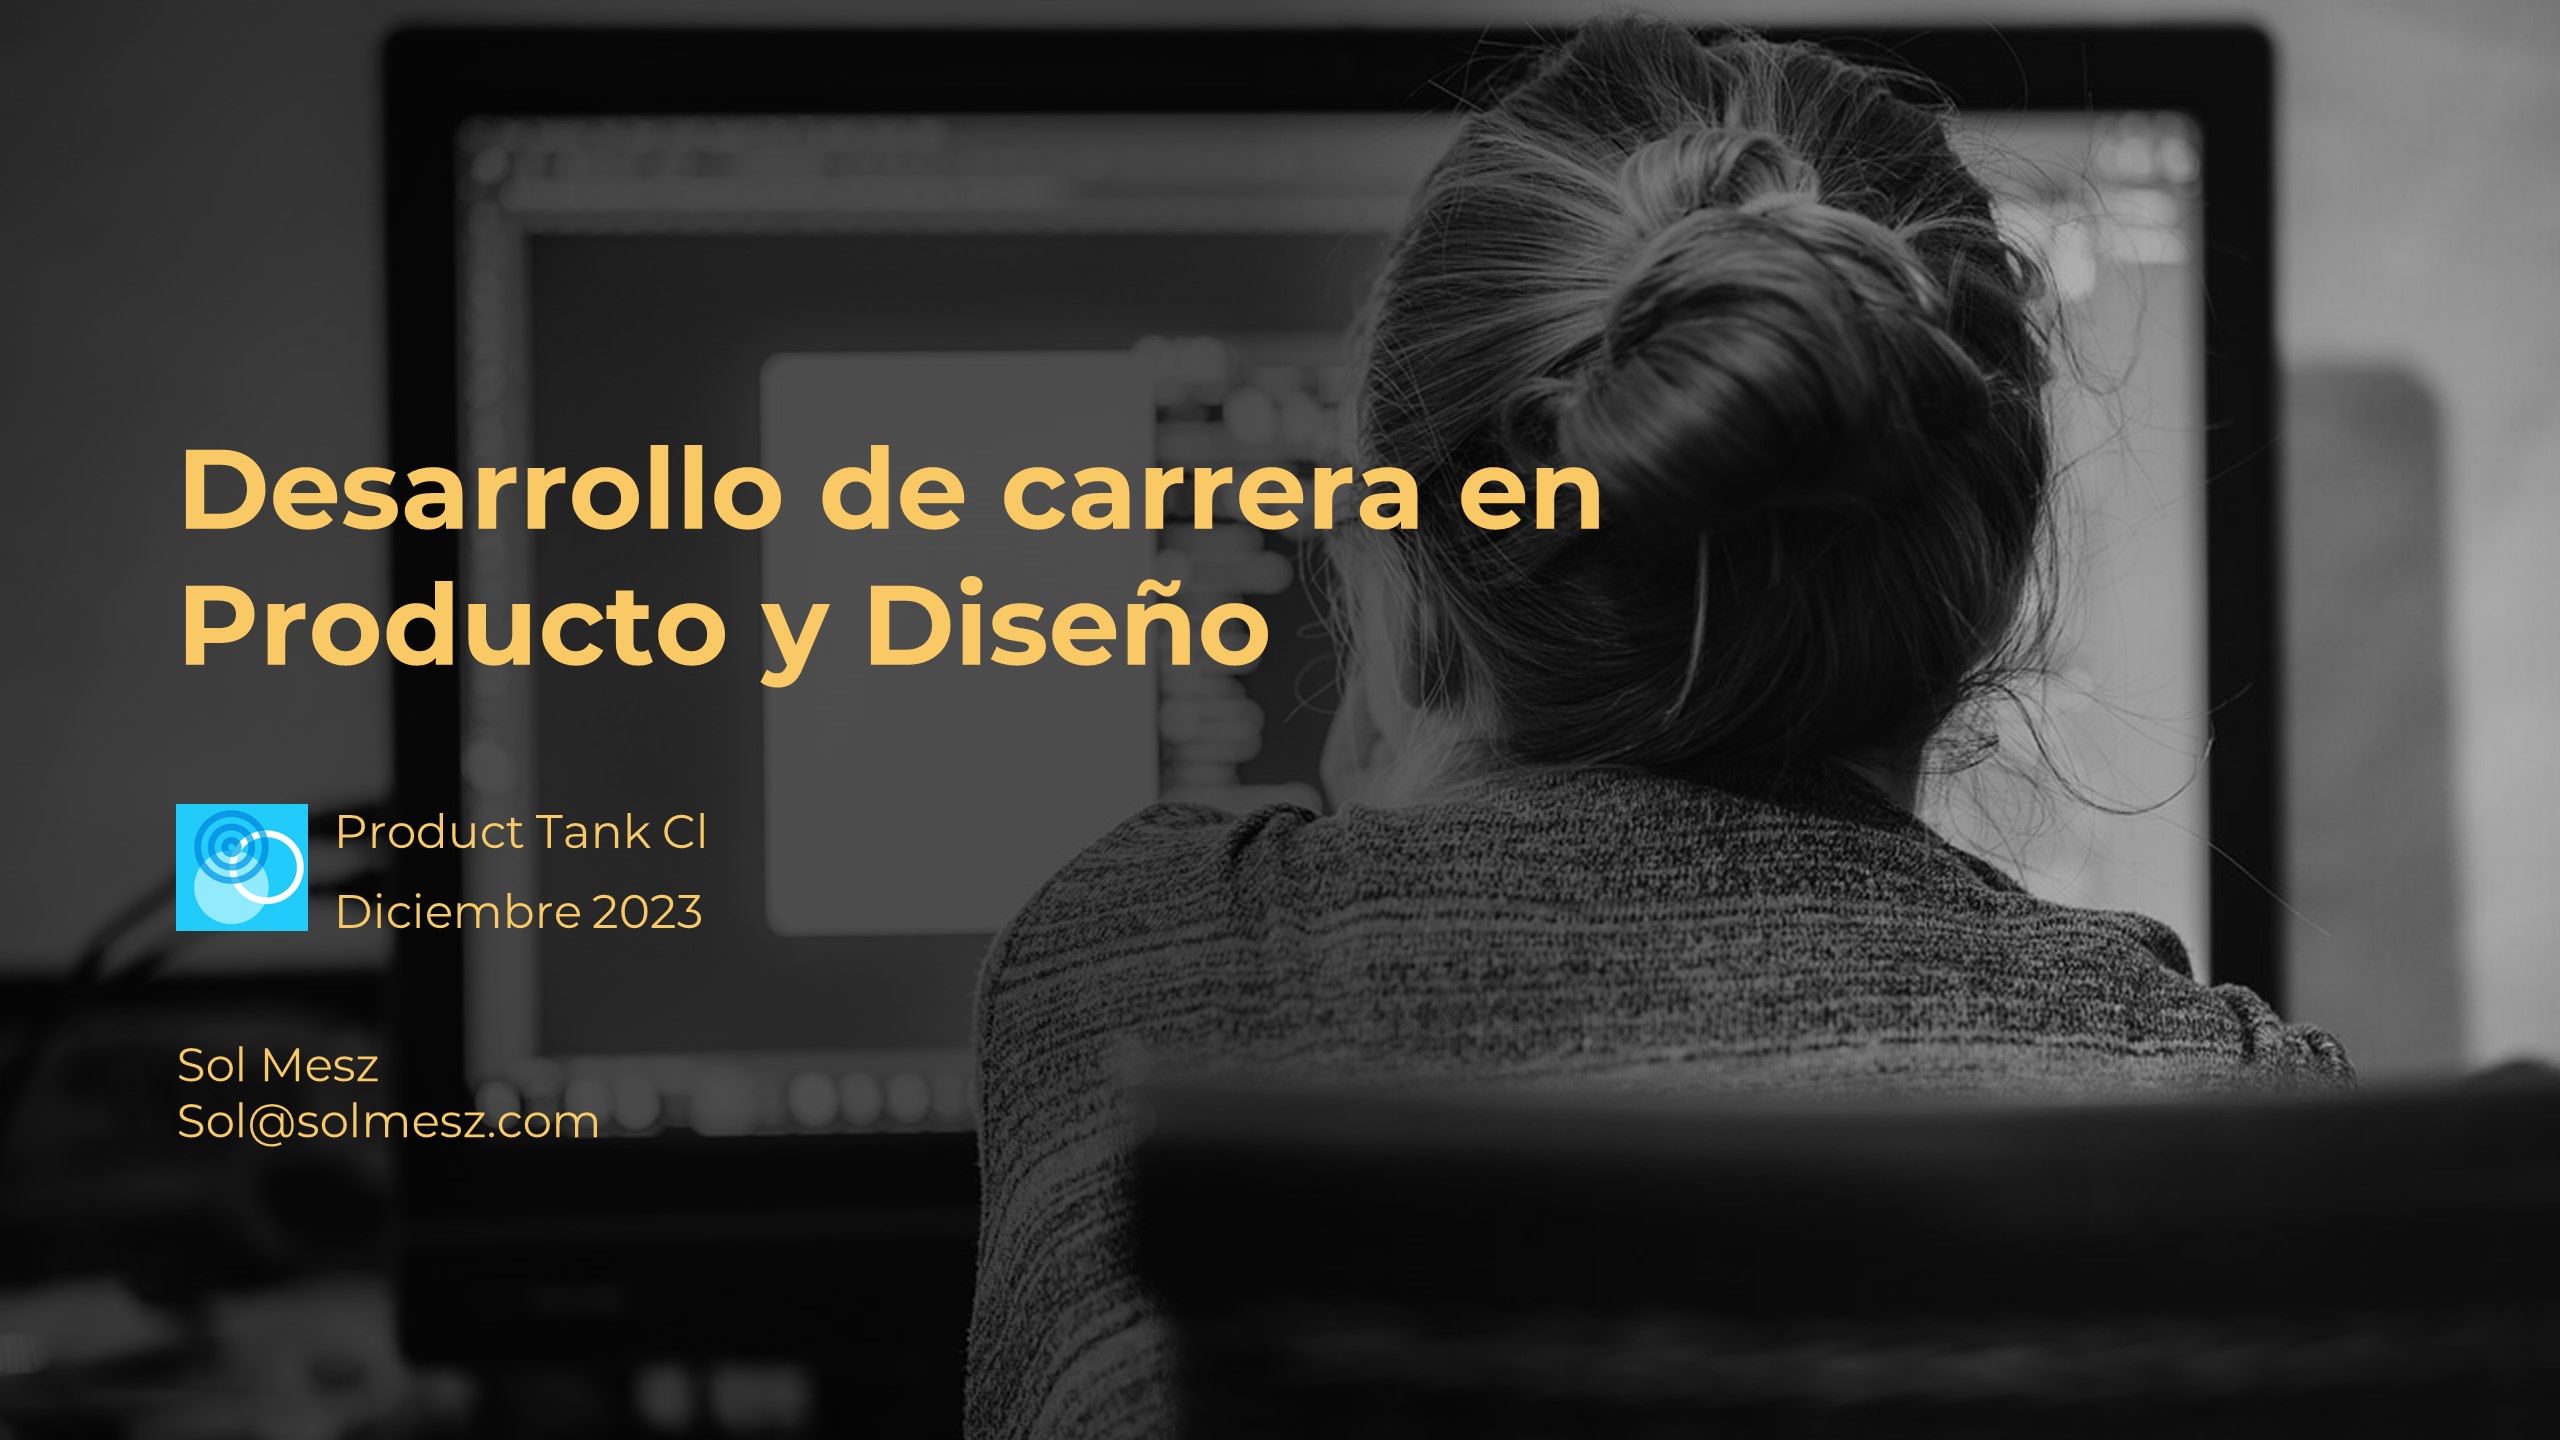 Caratula de la presentacion "Desarrollo de carrera en Producto y Diseño" para Product Tank Chile Diciembre 2023